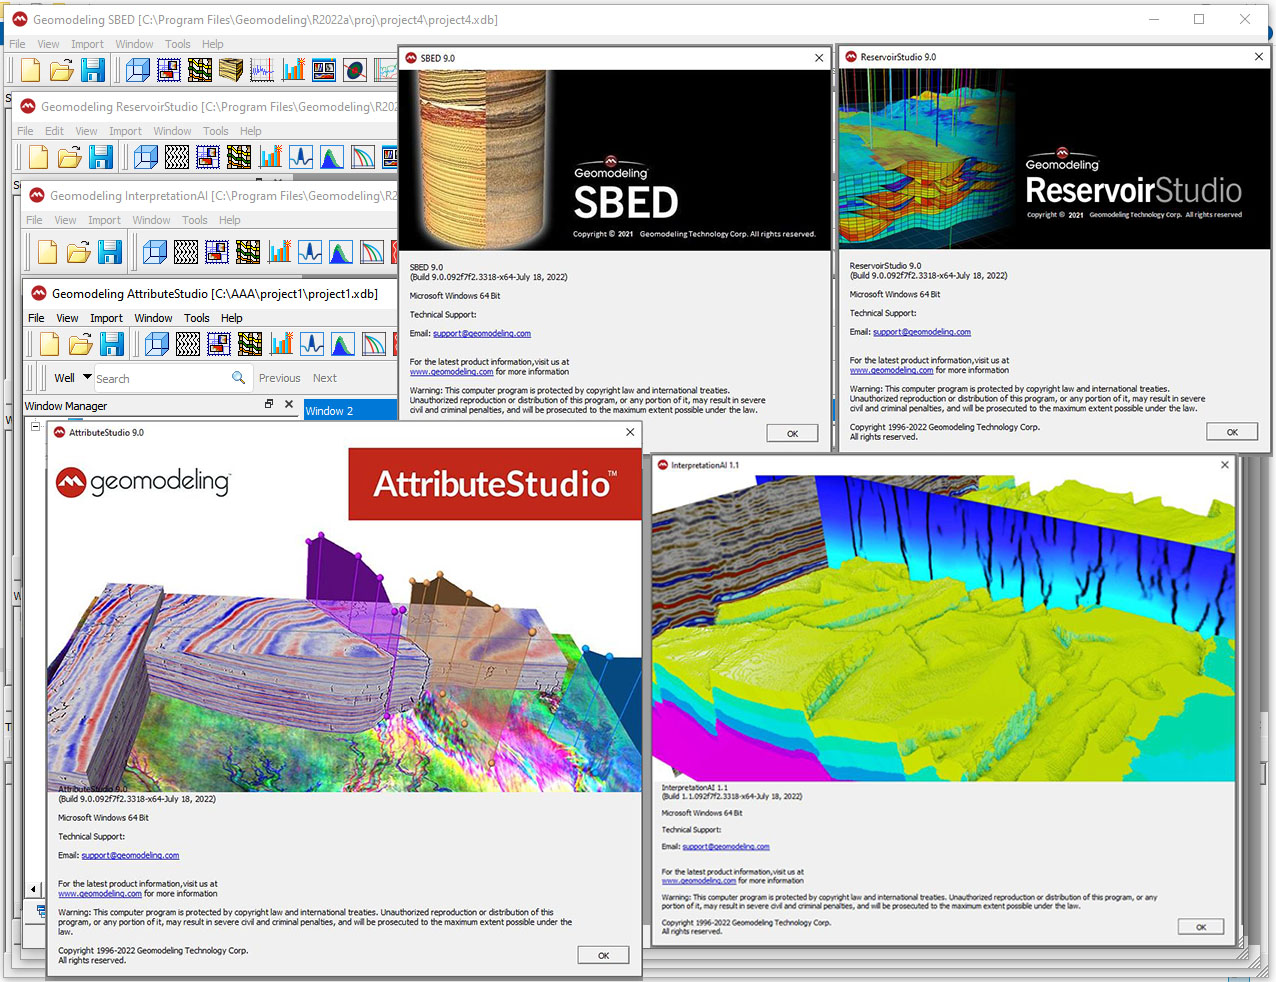 Geomodeling AttributeStudio 9.0